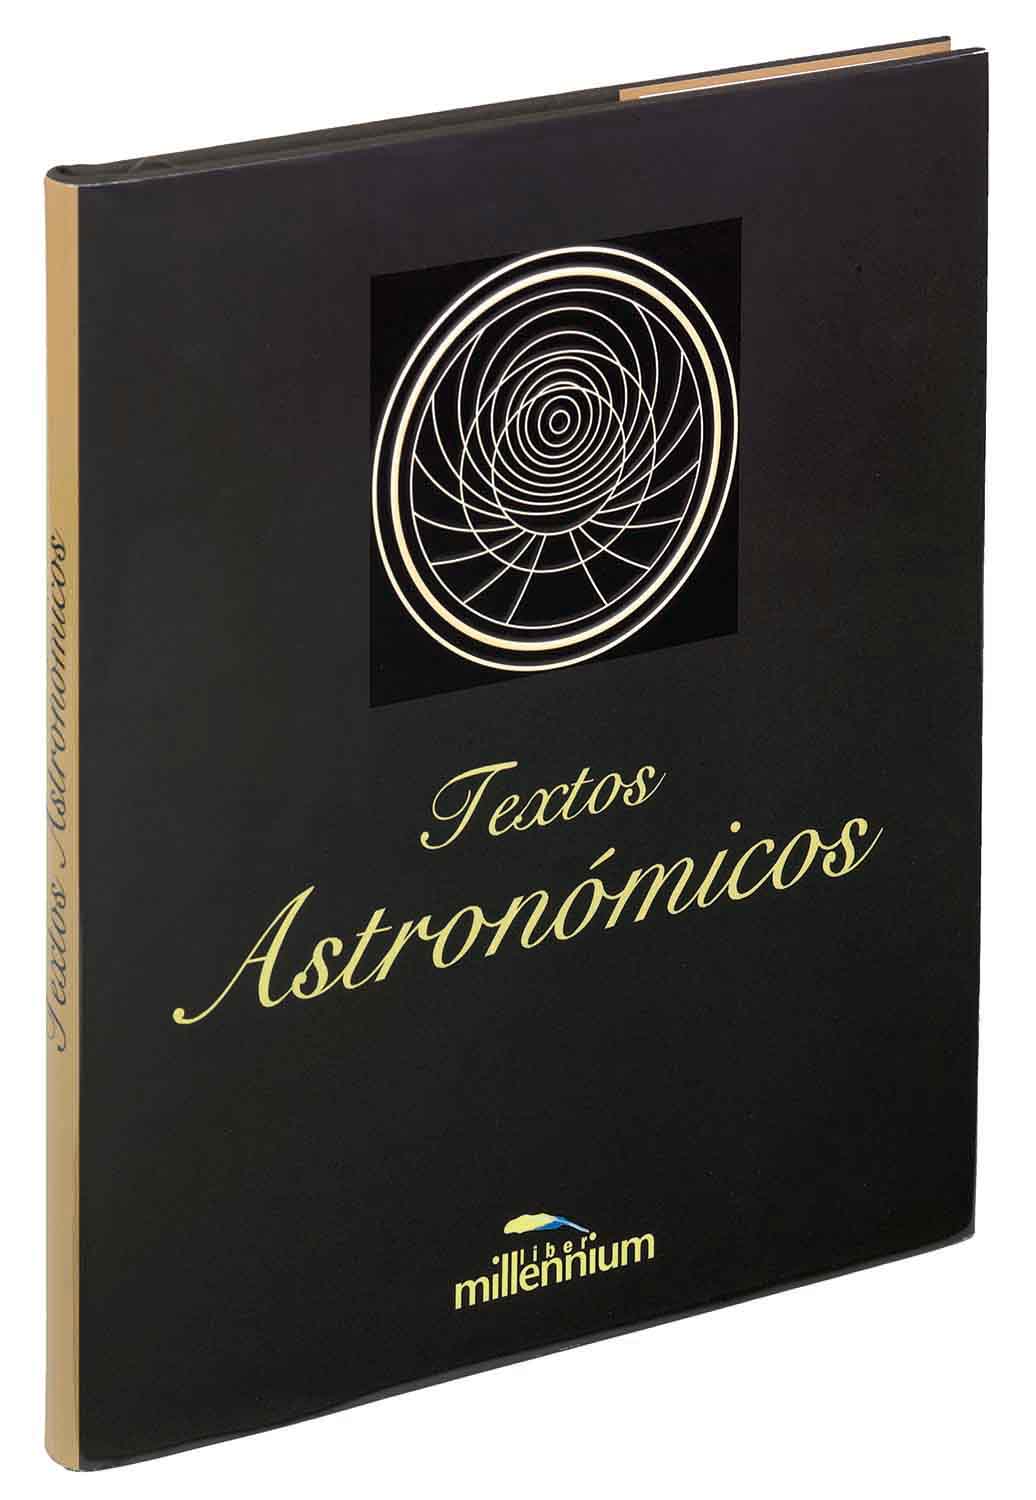 Textos Astronomicos 11 le